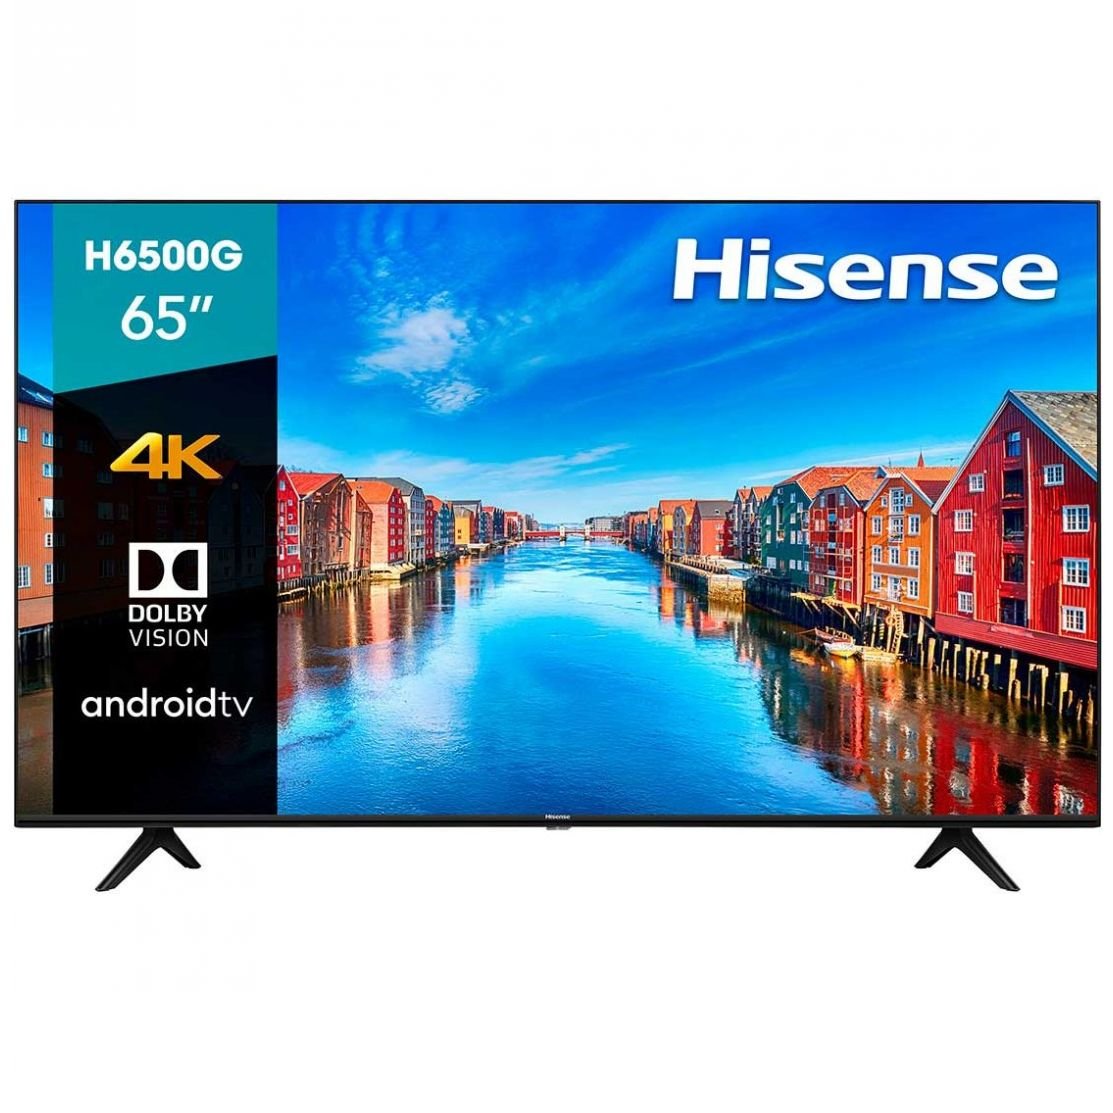 Pantalla Hisense 65" H65 4K Uhd Android Tv (65H6500G 2020)